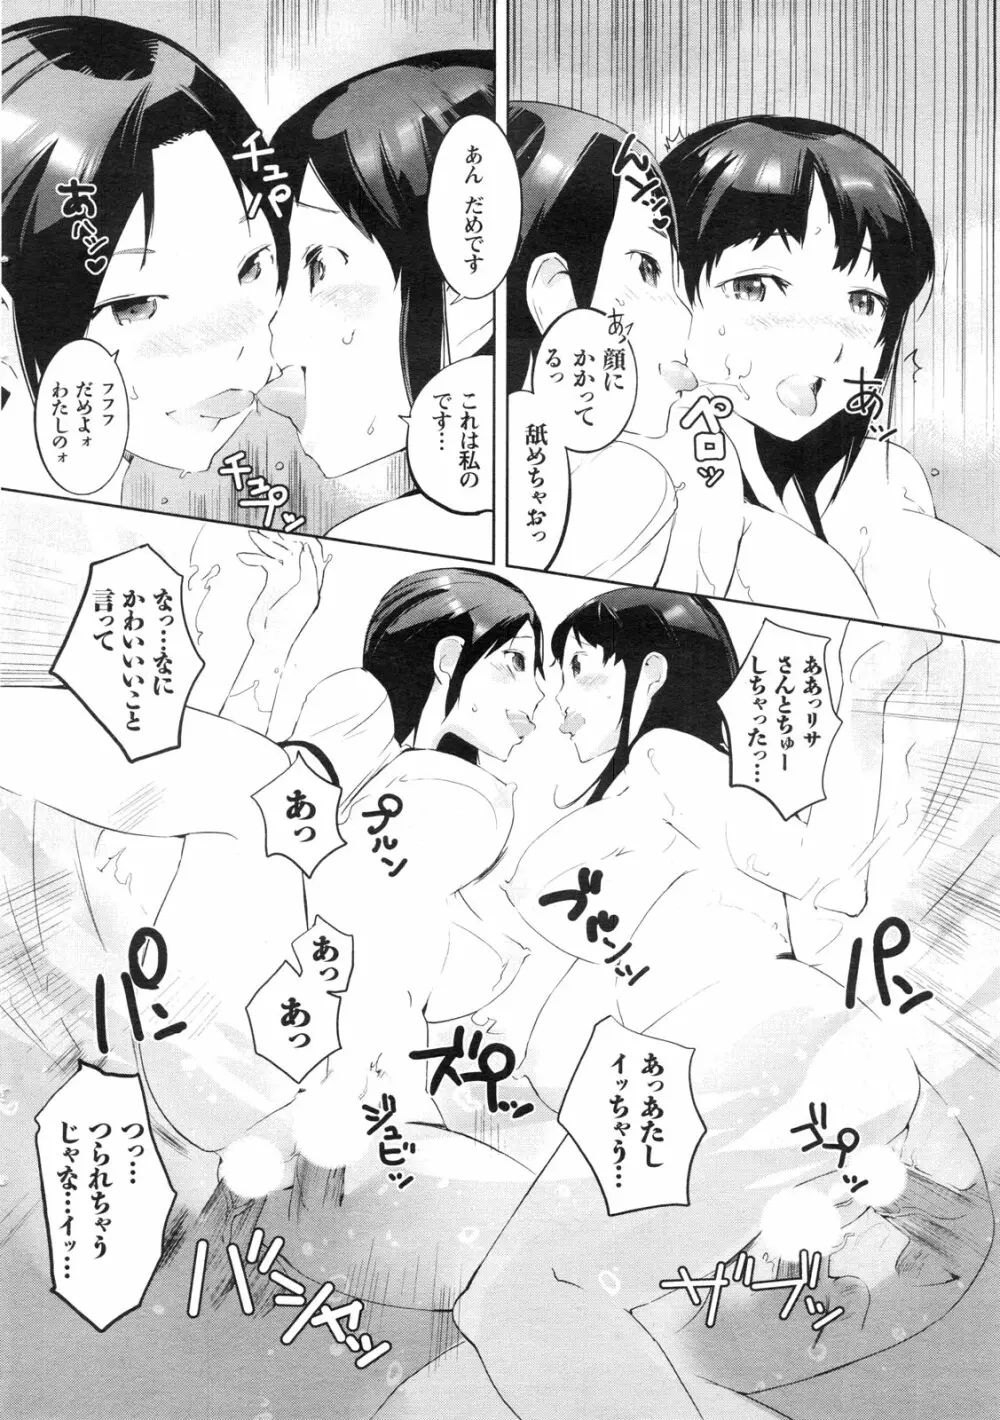 メンズヤングスペシャルIKAZUCHI雷 Vol.13 2010年3月号増刊 47ページ